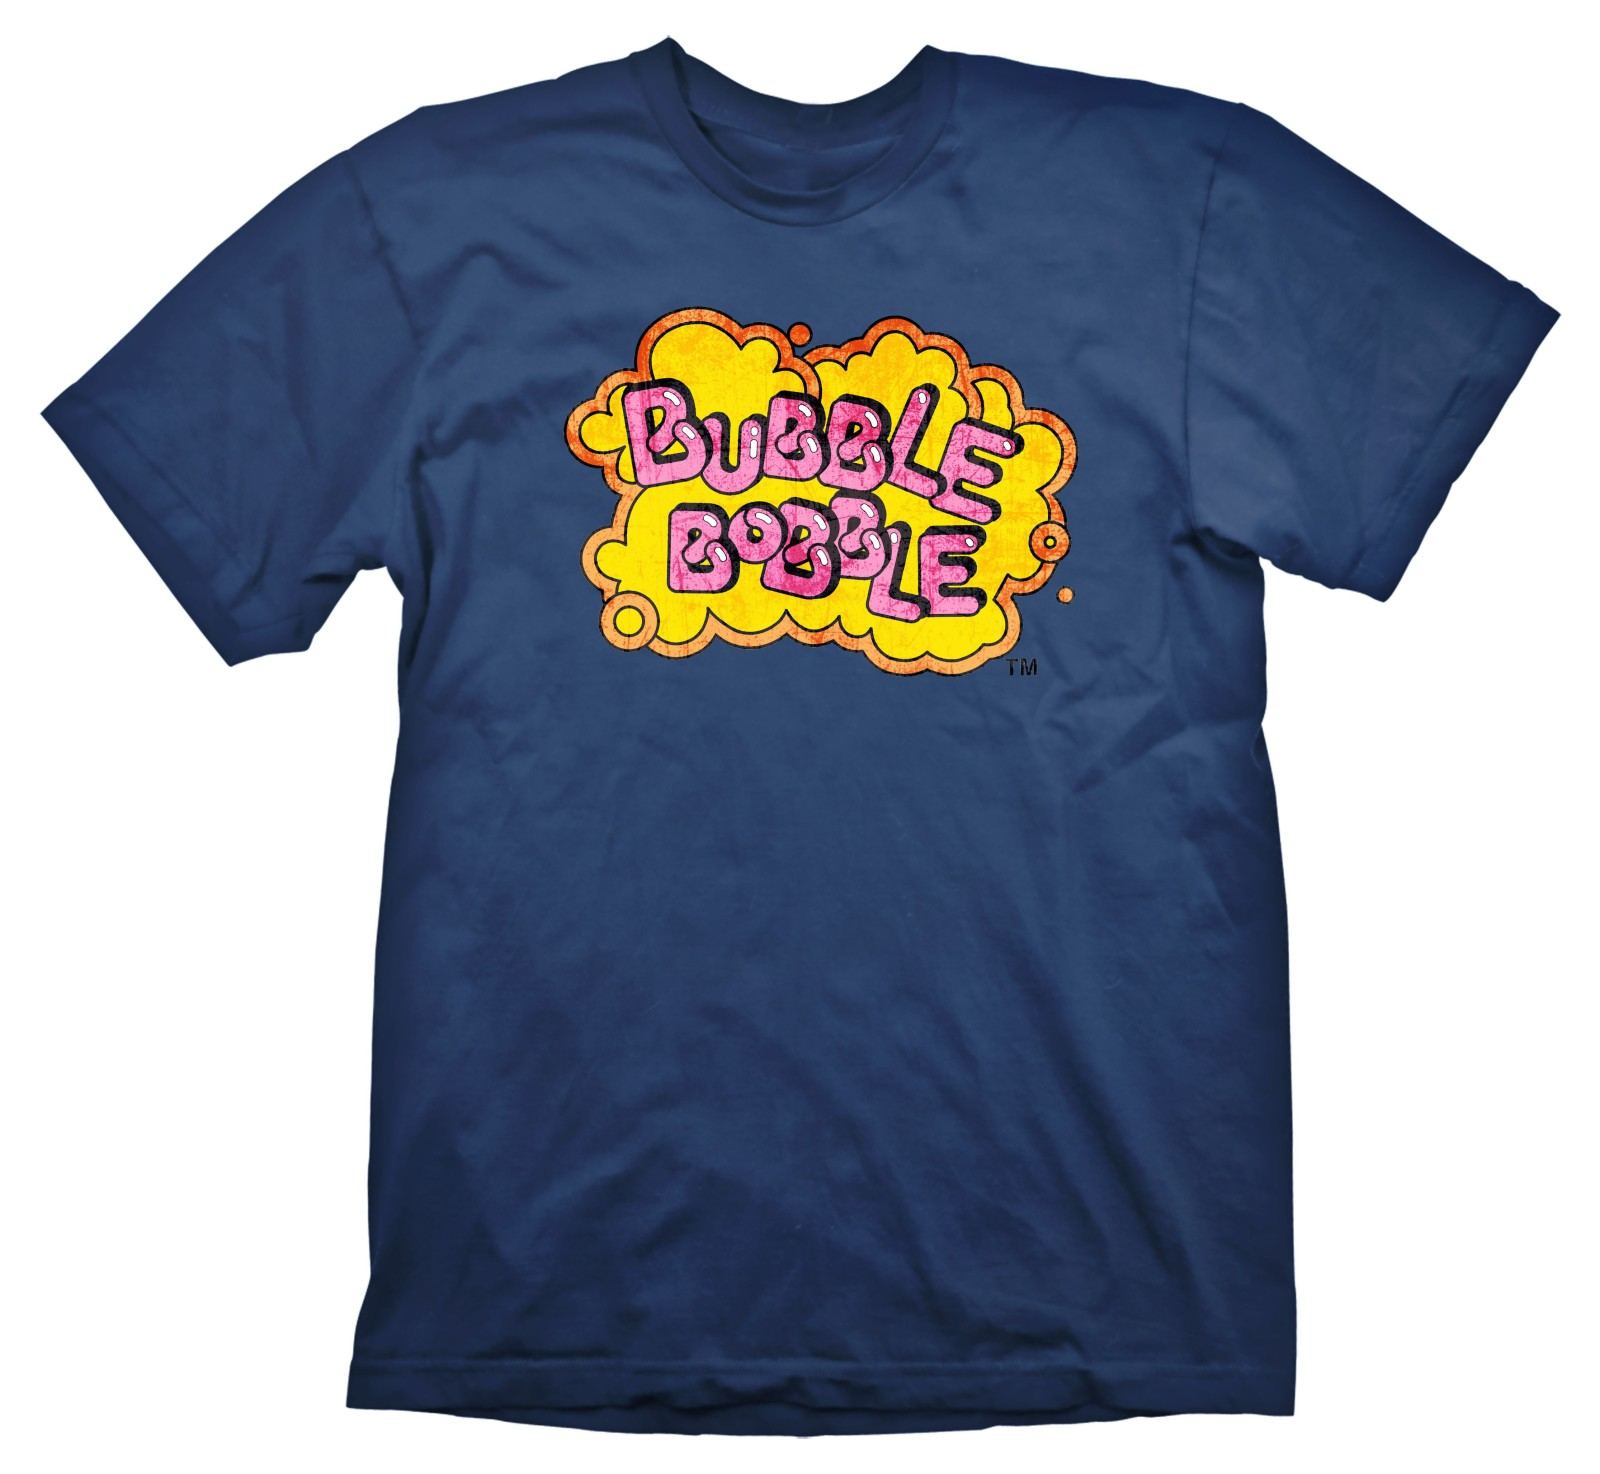 Bubble Bobble T-shirt Vintage Logo (M Size)